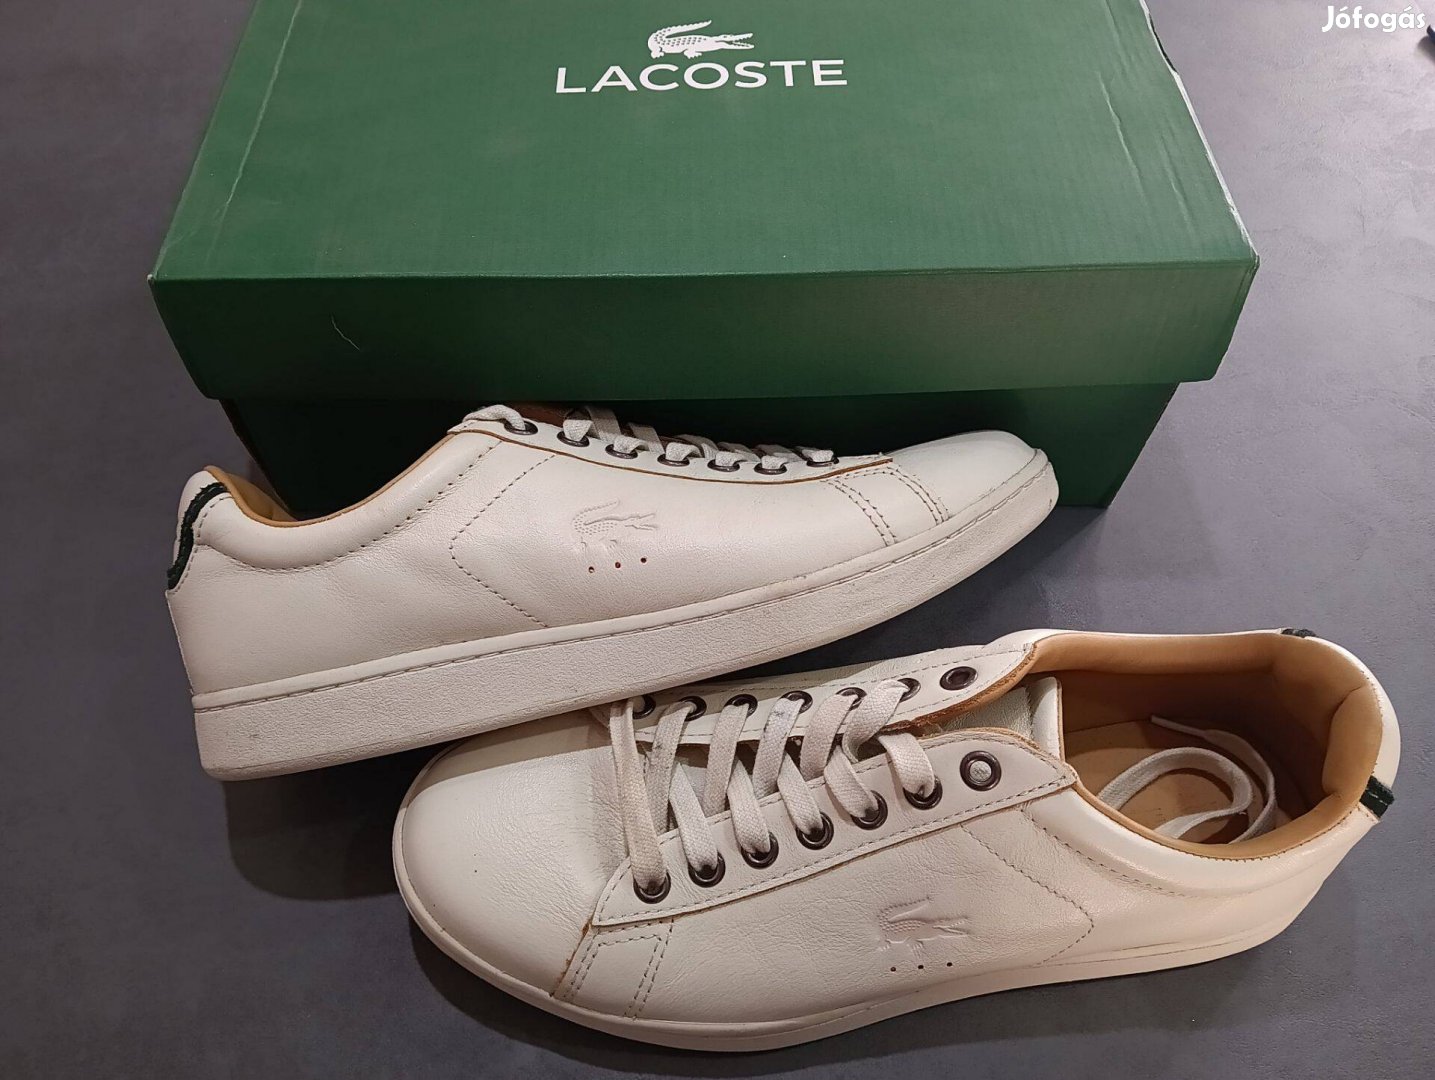 Lacoste Carnaby evo III cipő